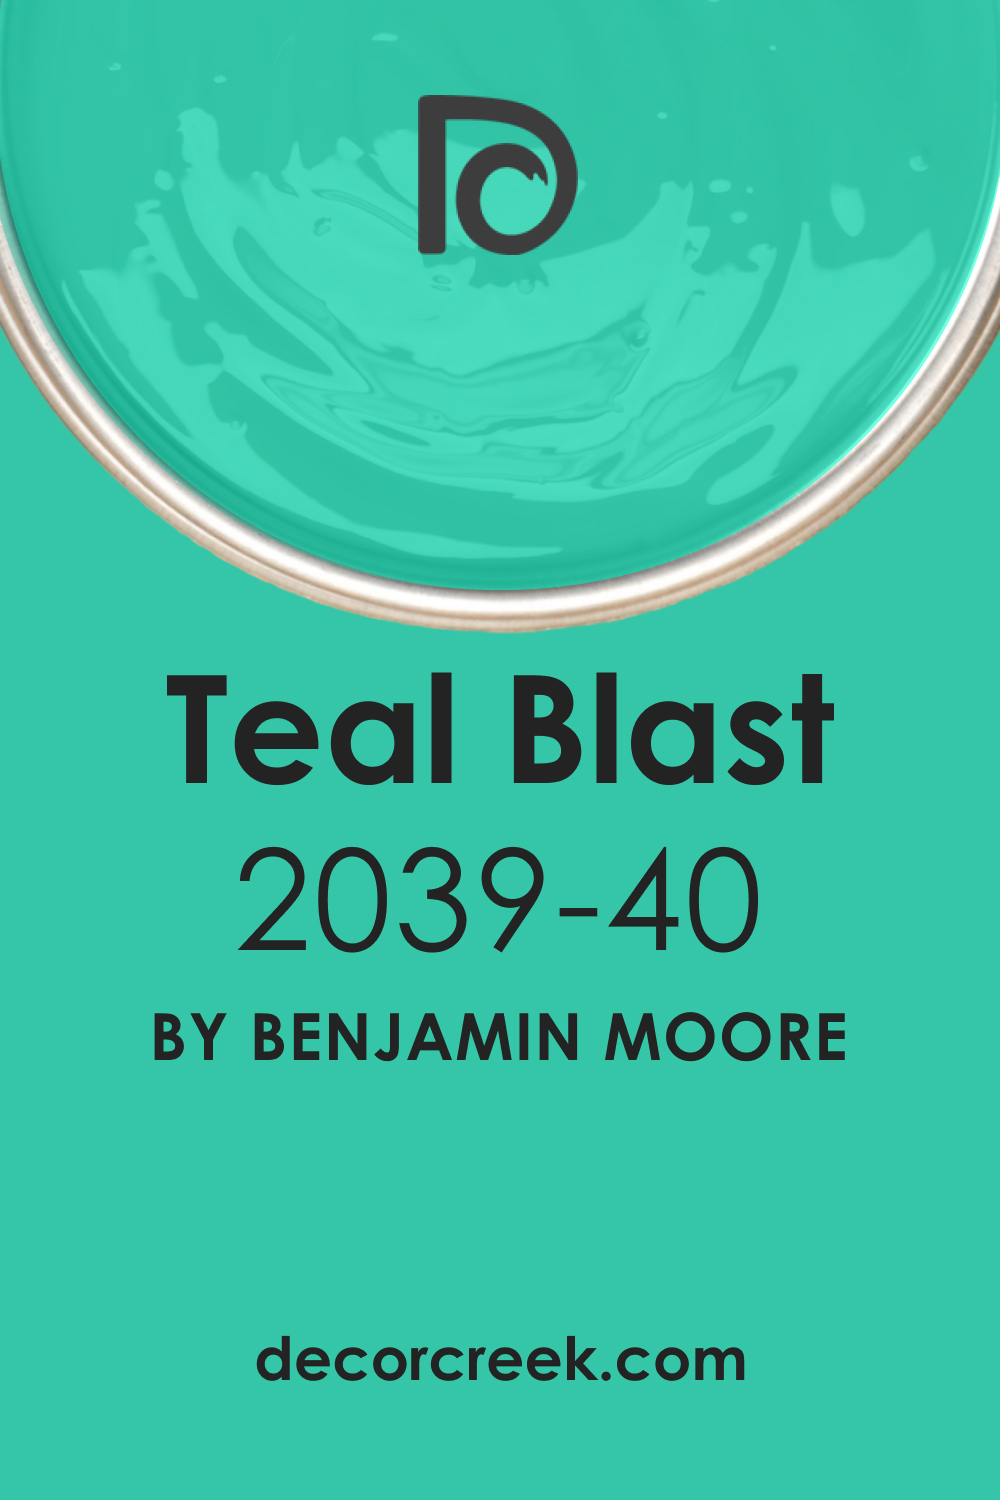 Teal Blast 2039-40 Paint Color by Benjamin Moore